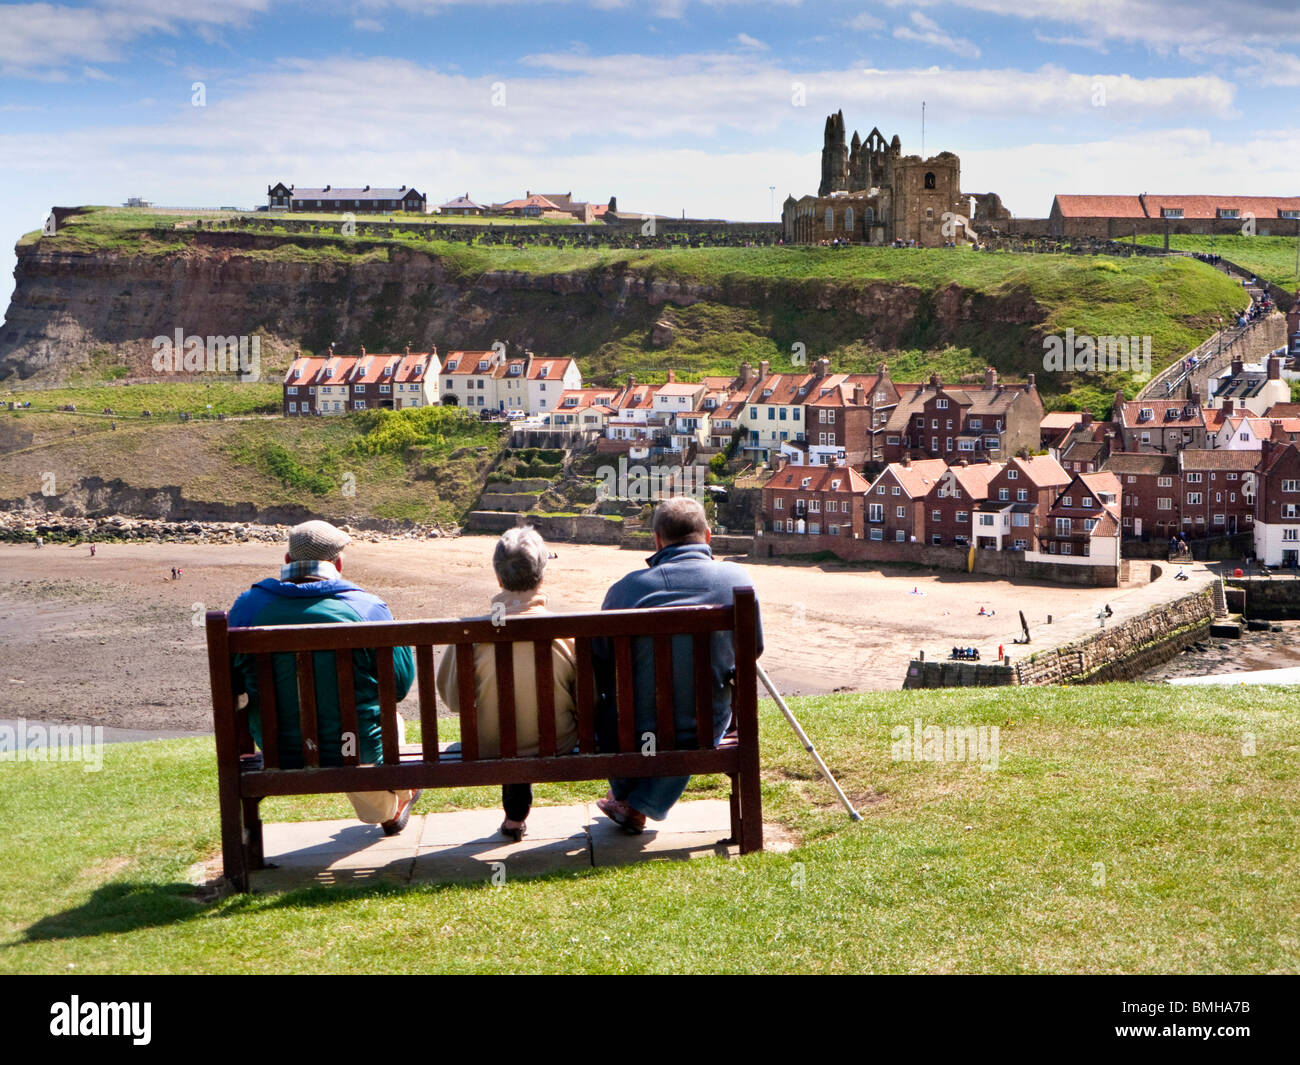 Touristen in Whitby - Senioren, mit Blick auf die Abtei und Hafen bei Whitby, North Yorkshire, England UK Stockfoto